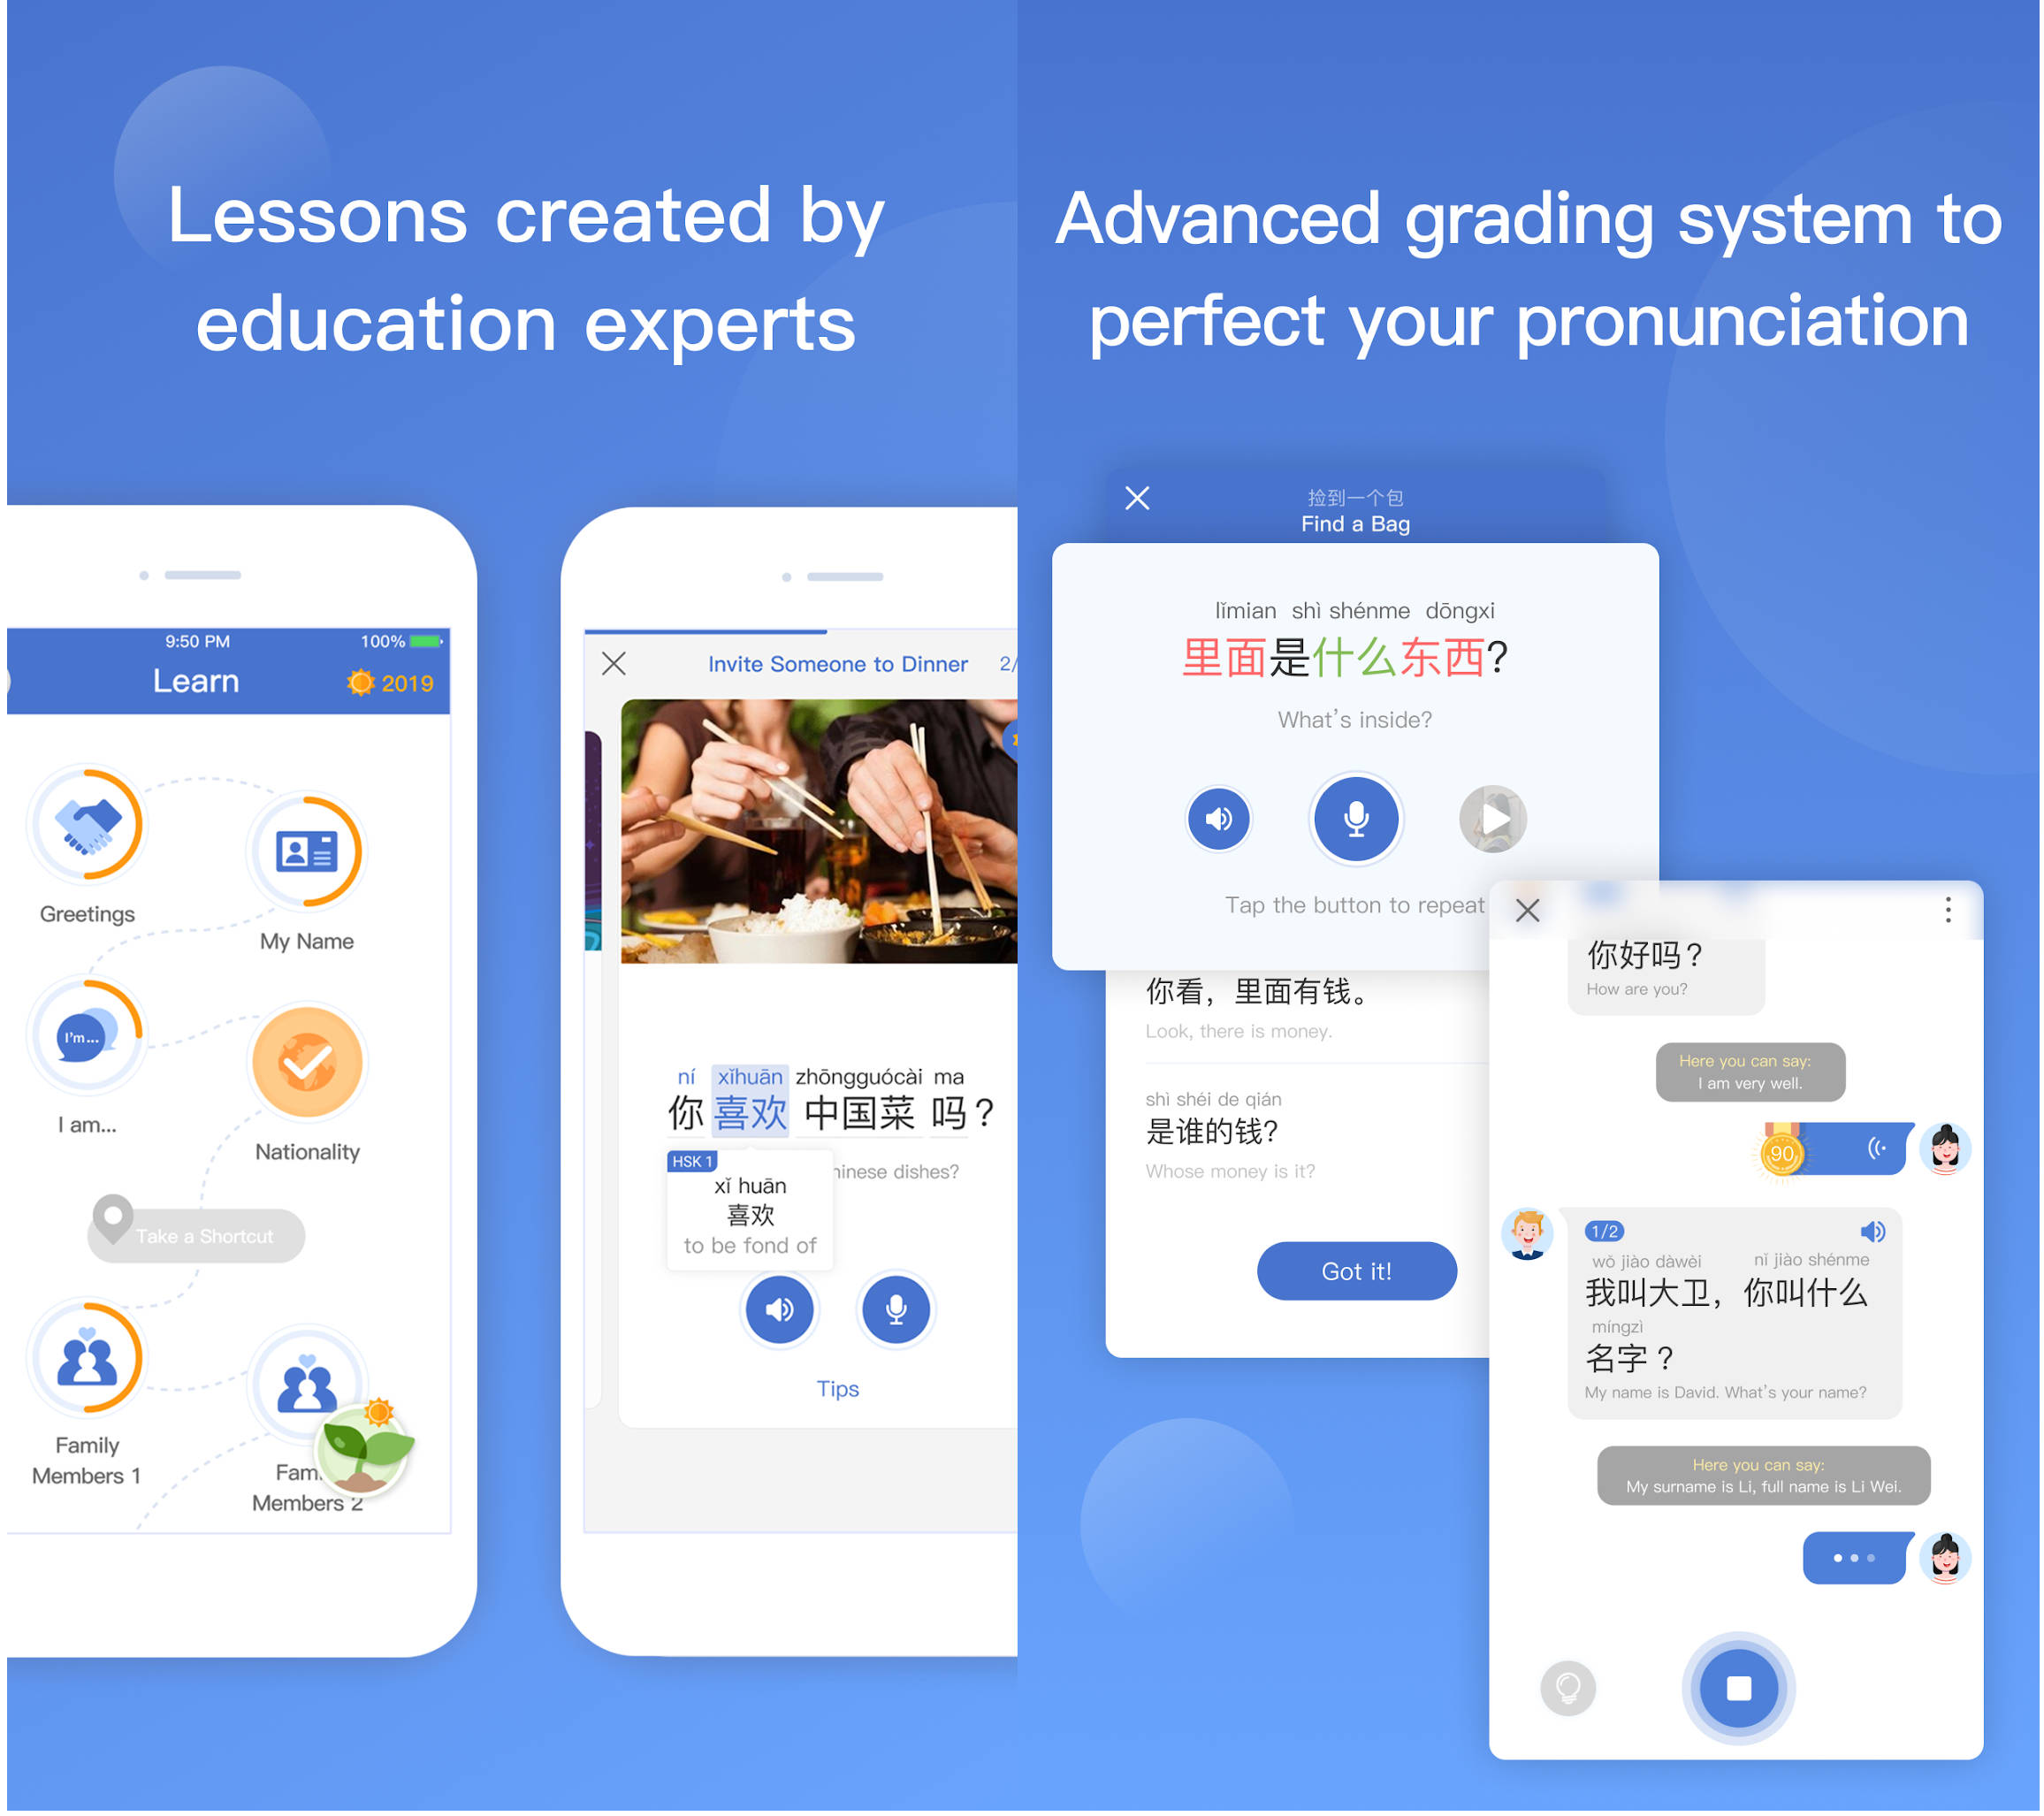 najlepsze nowe aplikacje Android listopad 2019 Sklep Google Play Microsoft Learn Chinese